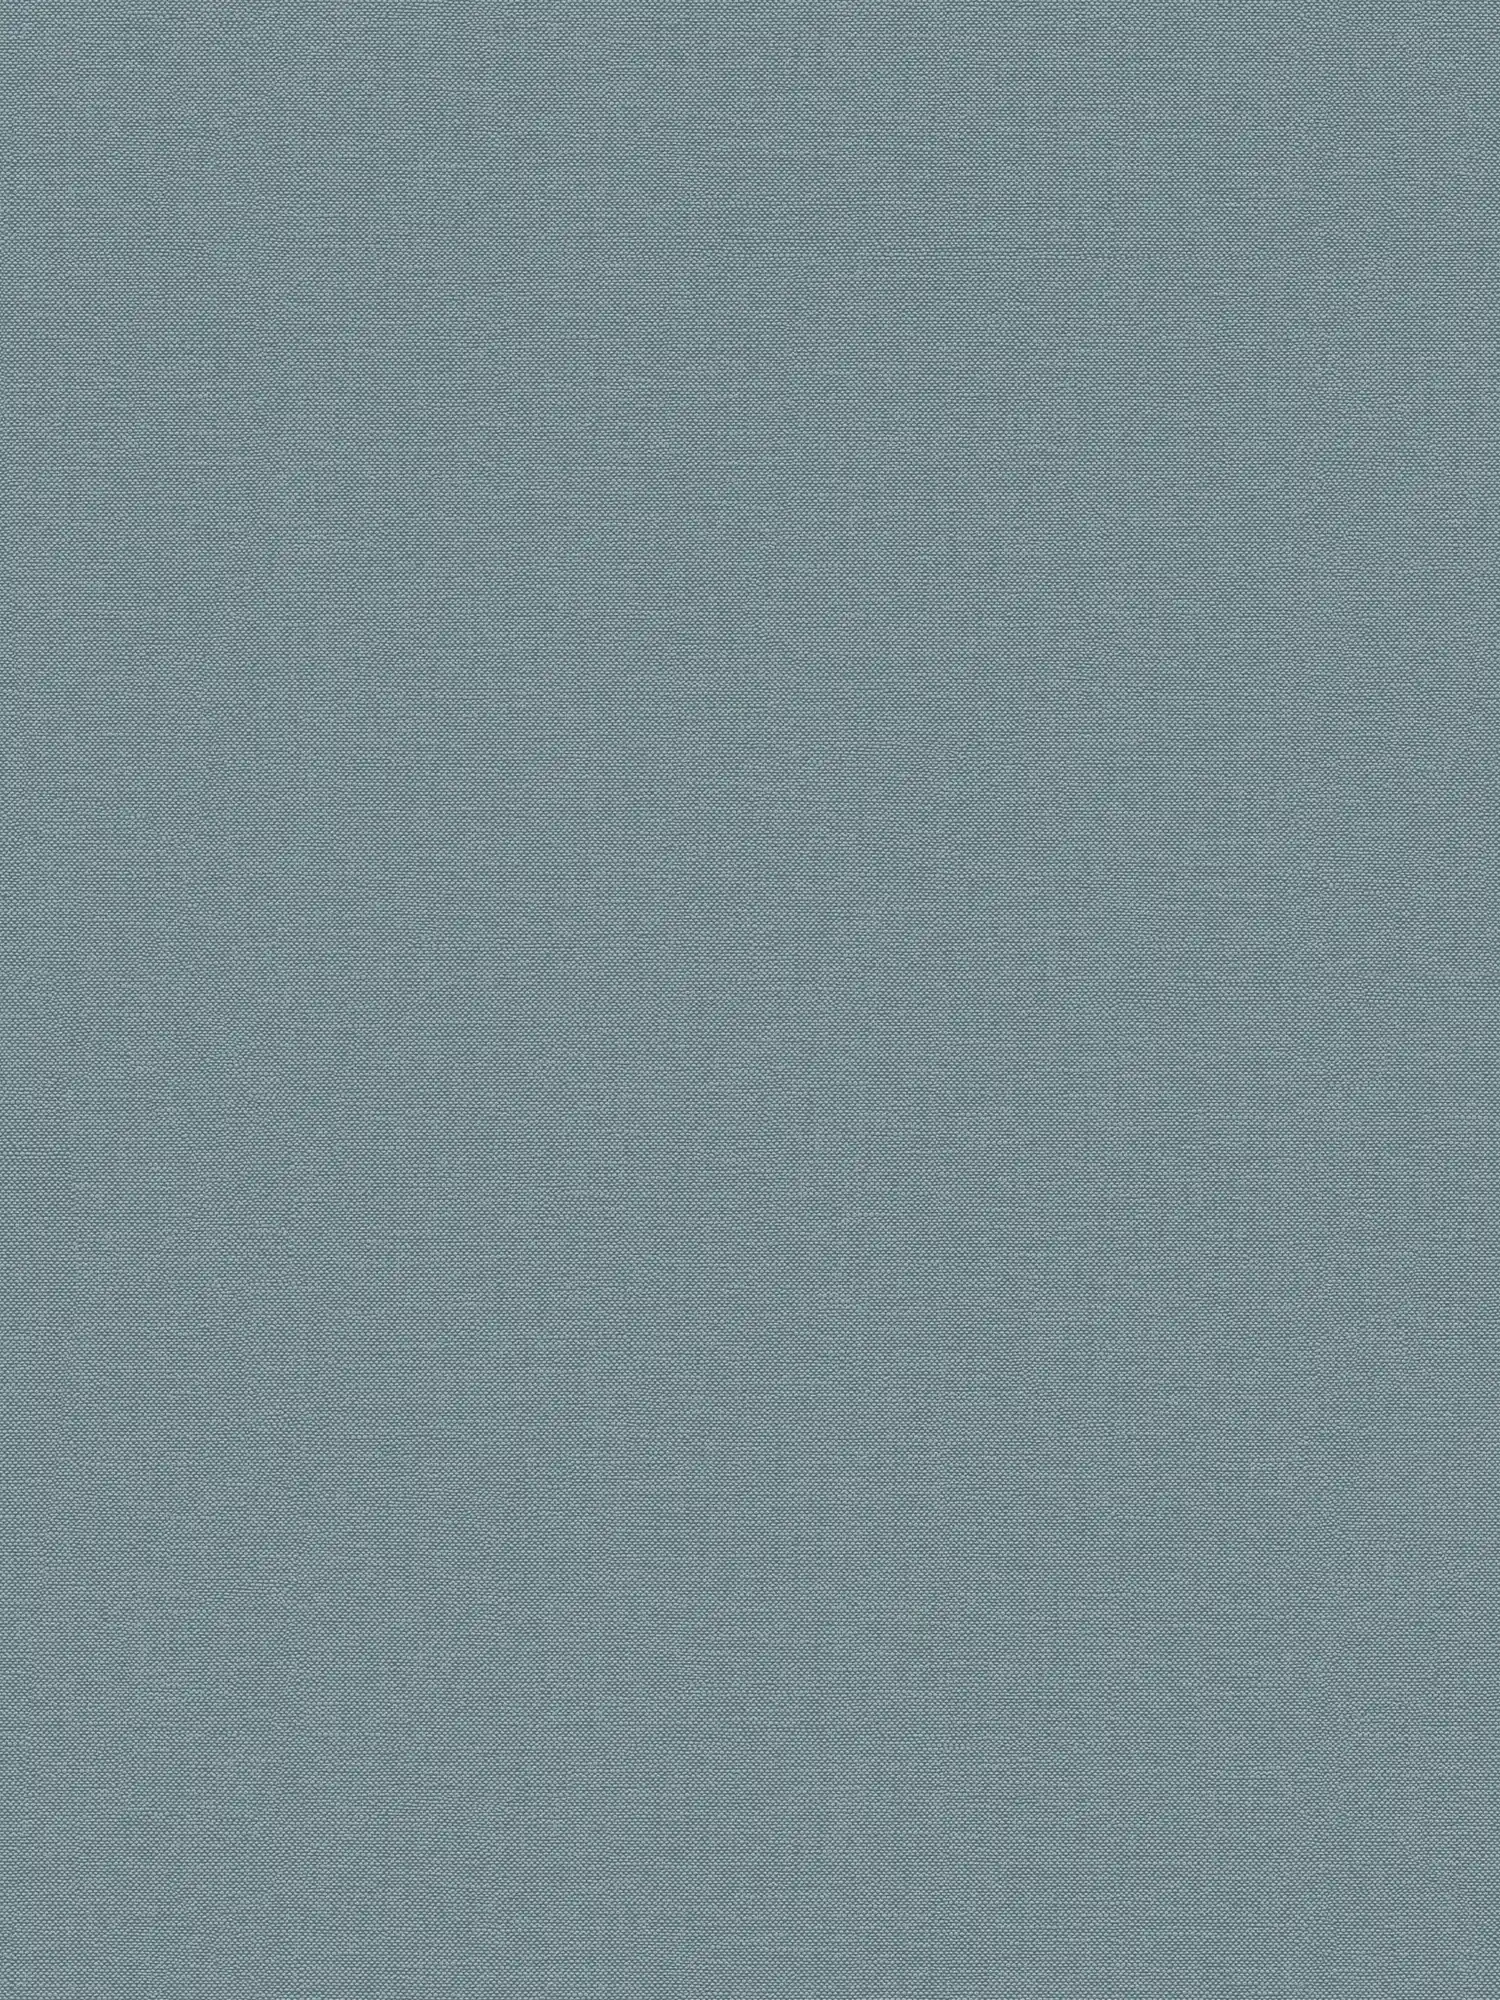 Einfarbige Tapete mit Gewebe-Struktur matt – Blau
